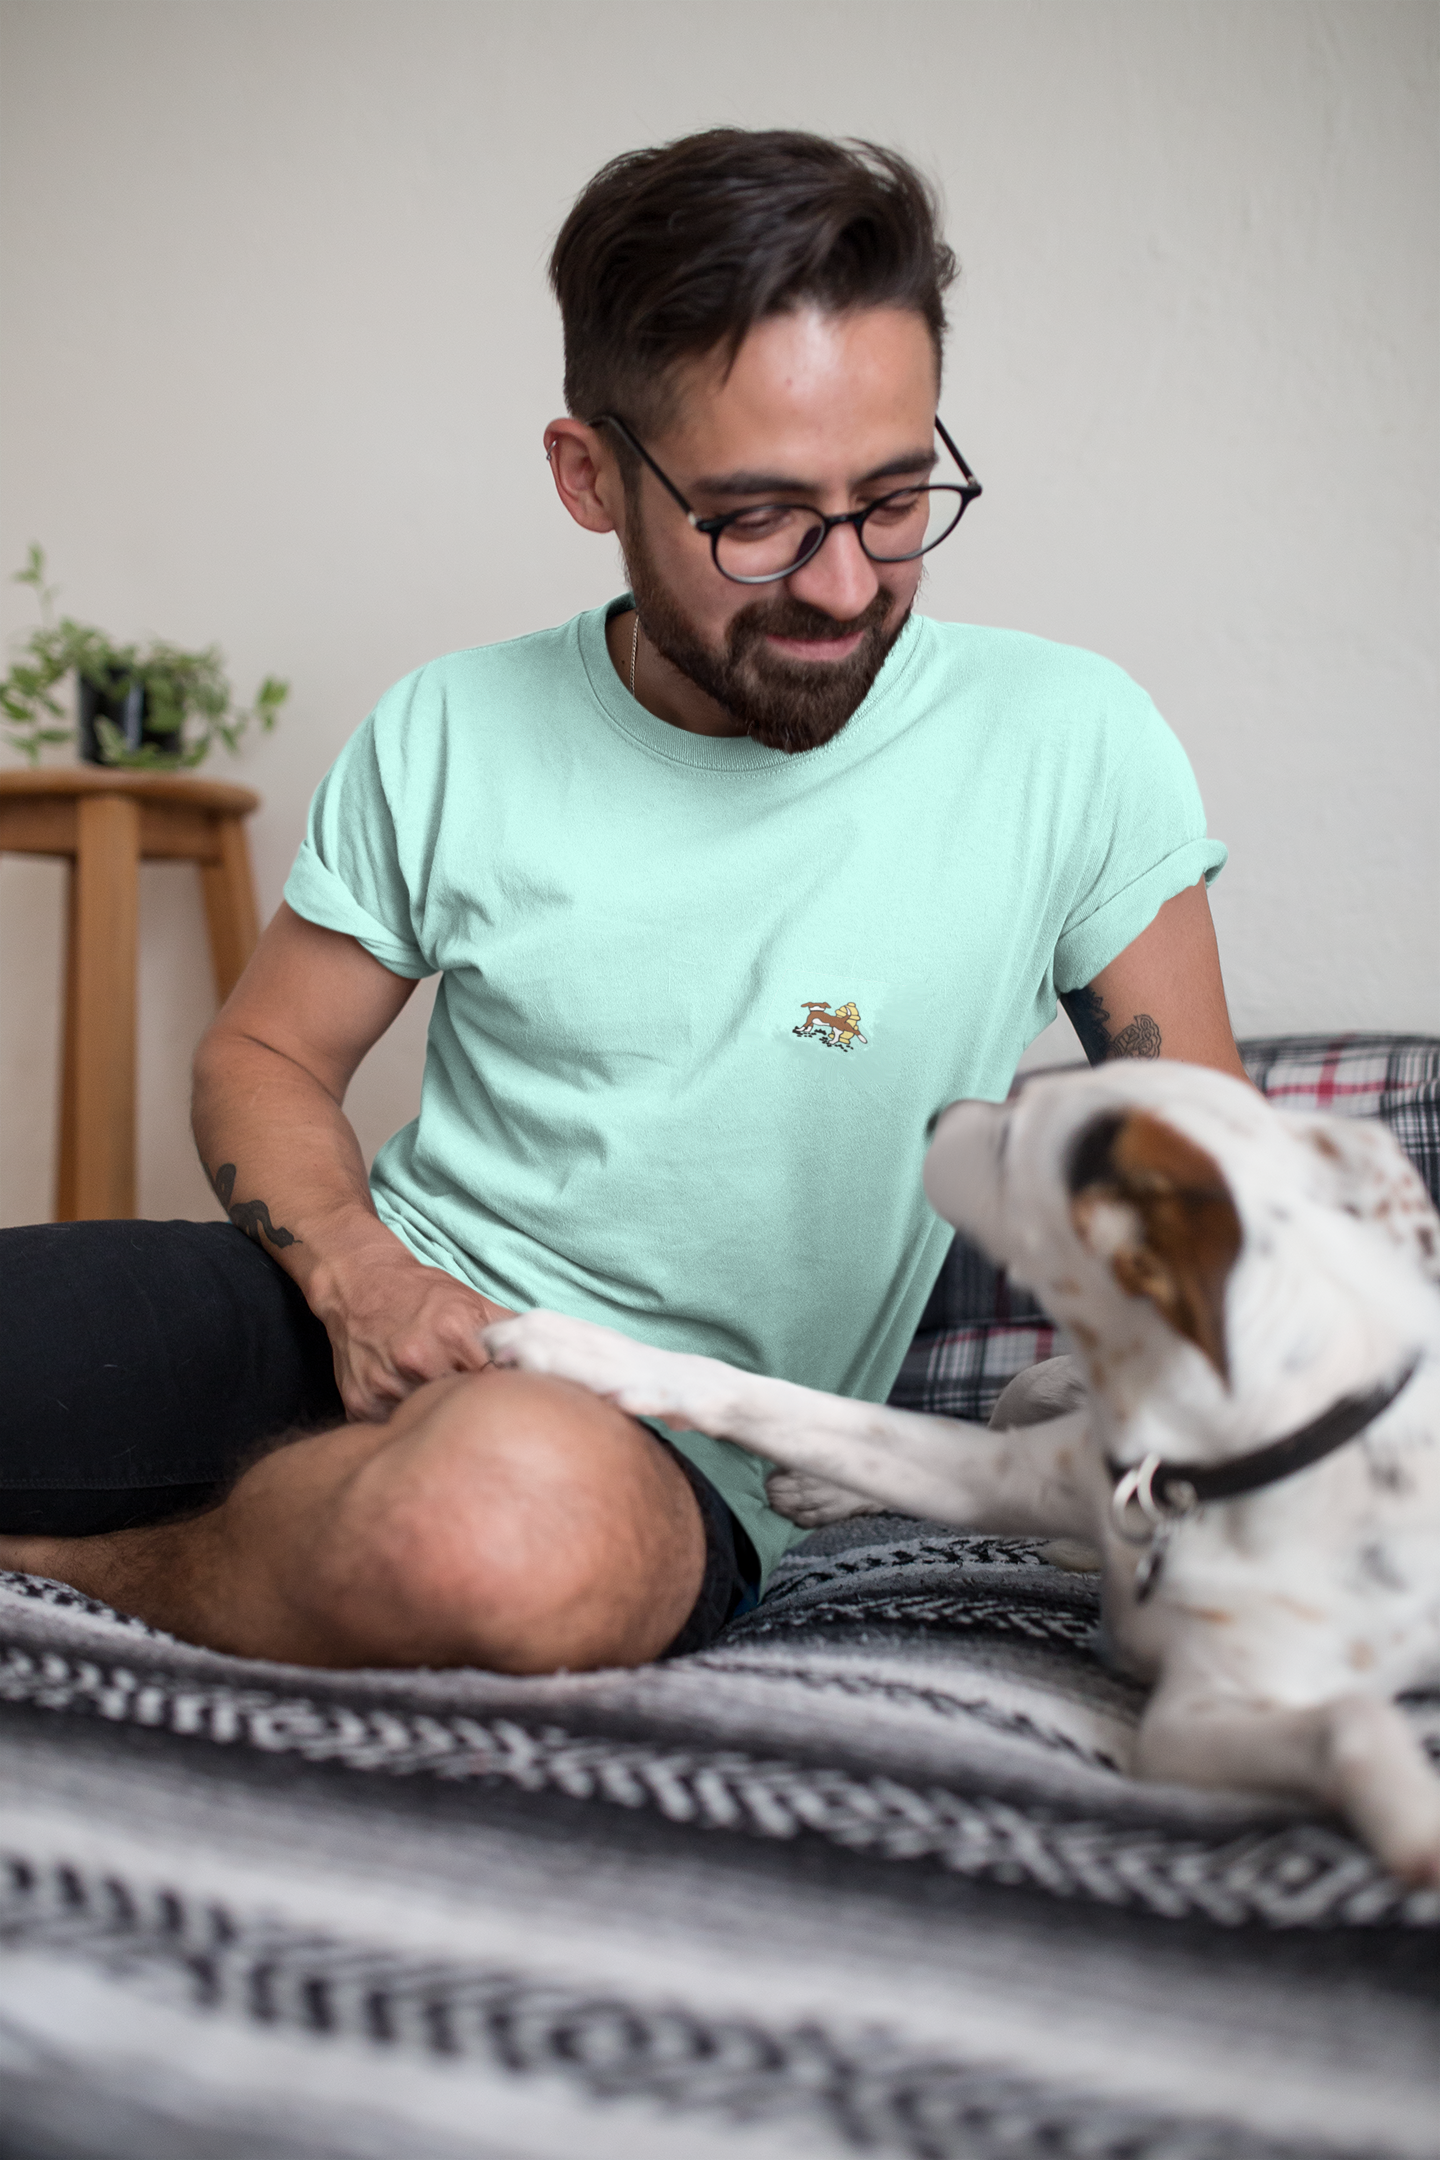 Dog Shirt Short-Sleeve Unisex Embroidered T-Shirt